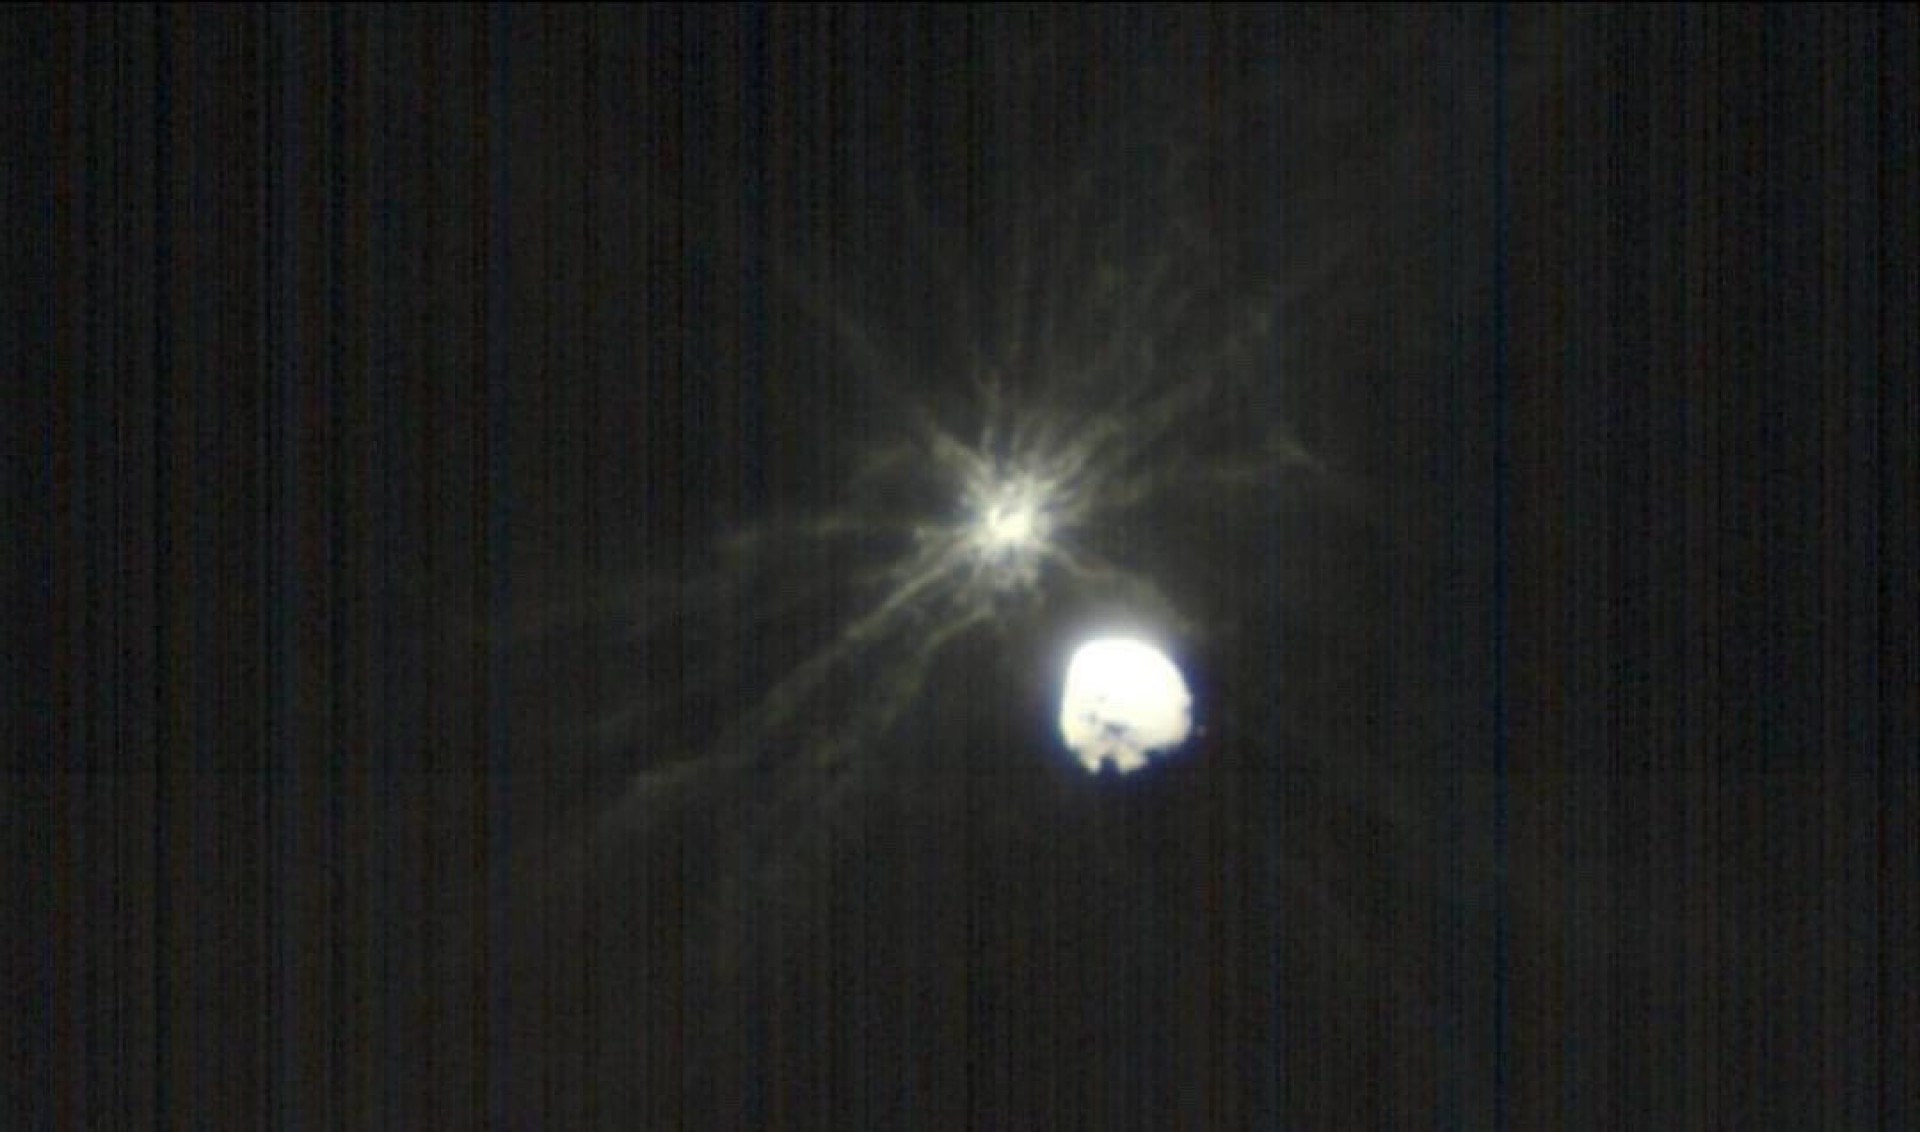 NASA’nın DART aracının asteroitle çarpışma görüntüleri yayınlandı